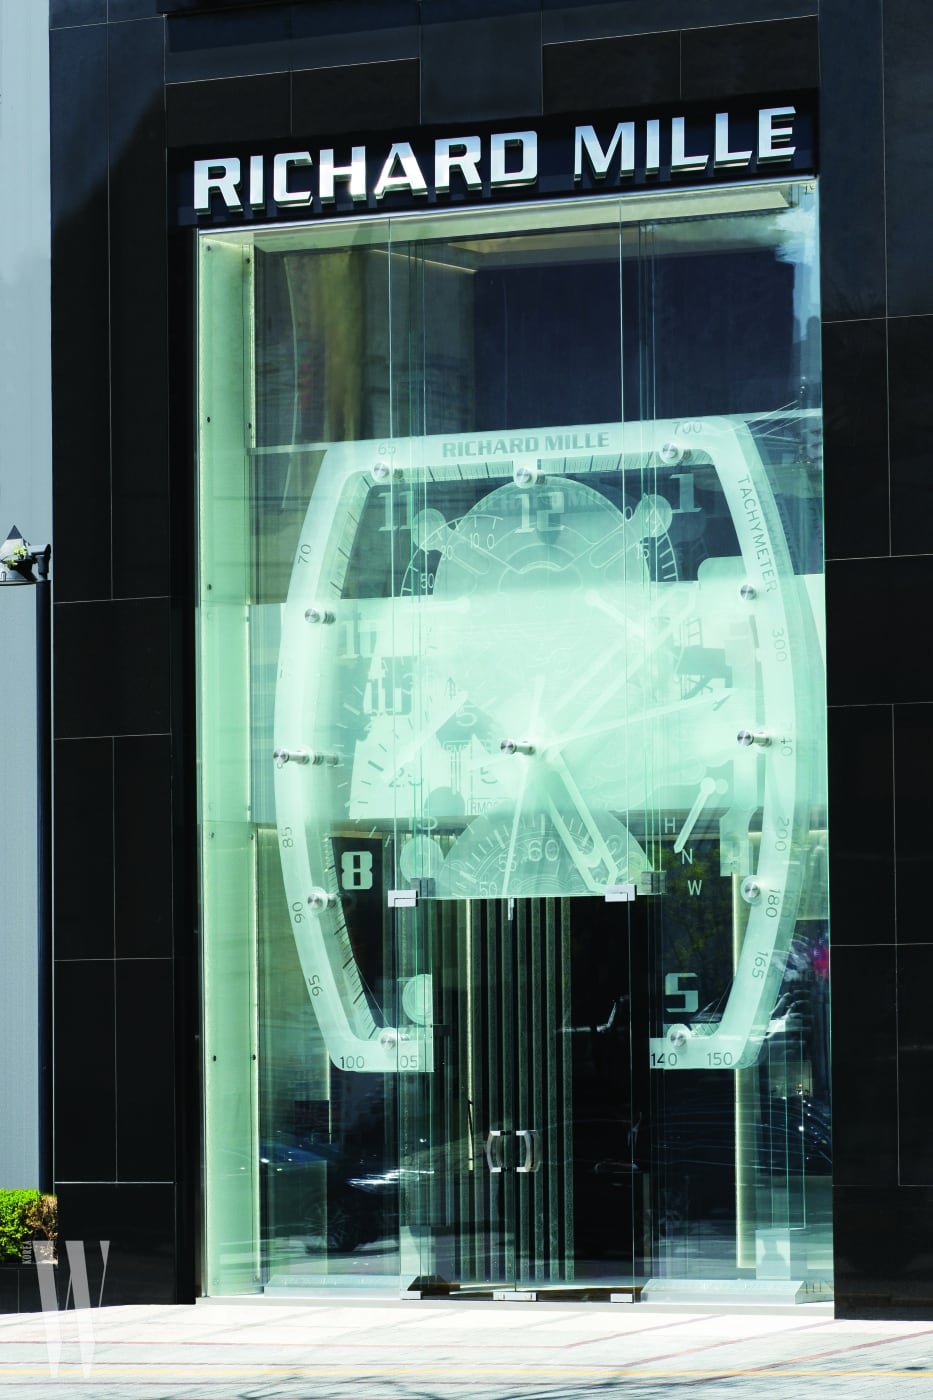 브랜드의 아이콘인 스플릿 세컨즈 크로노그래프 RM008을 형상화한 대형 유리 조형물이 시선을 끈다.